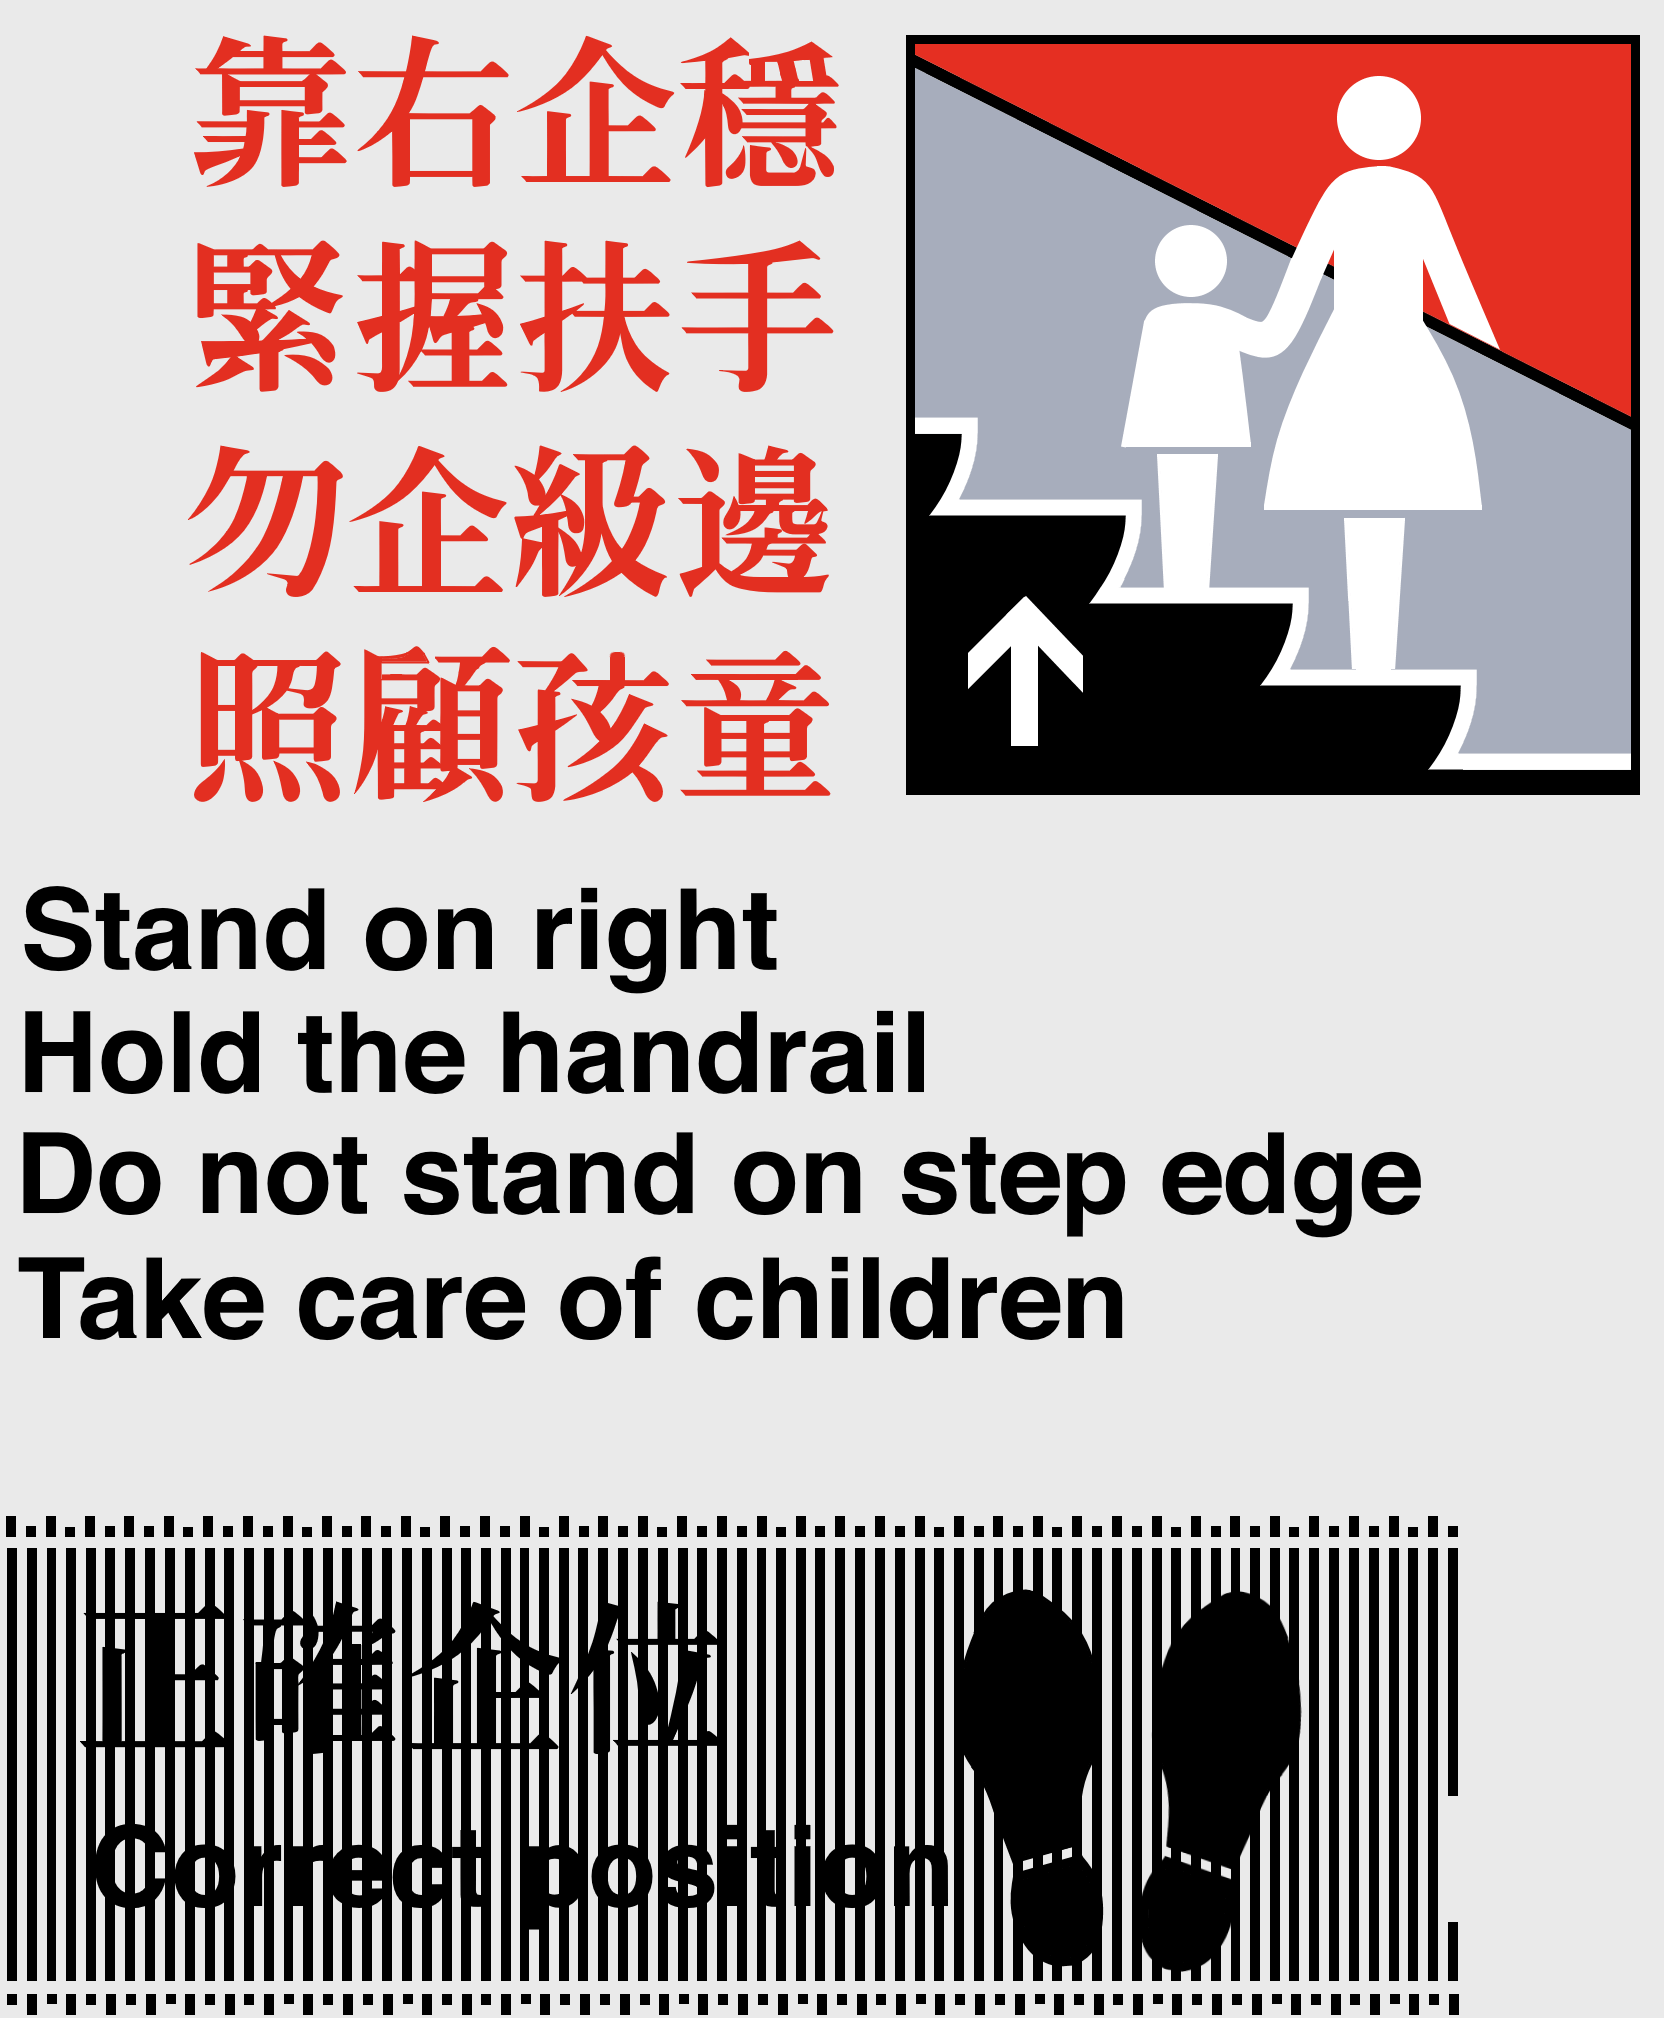 Ex-MTR Escalator notice